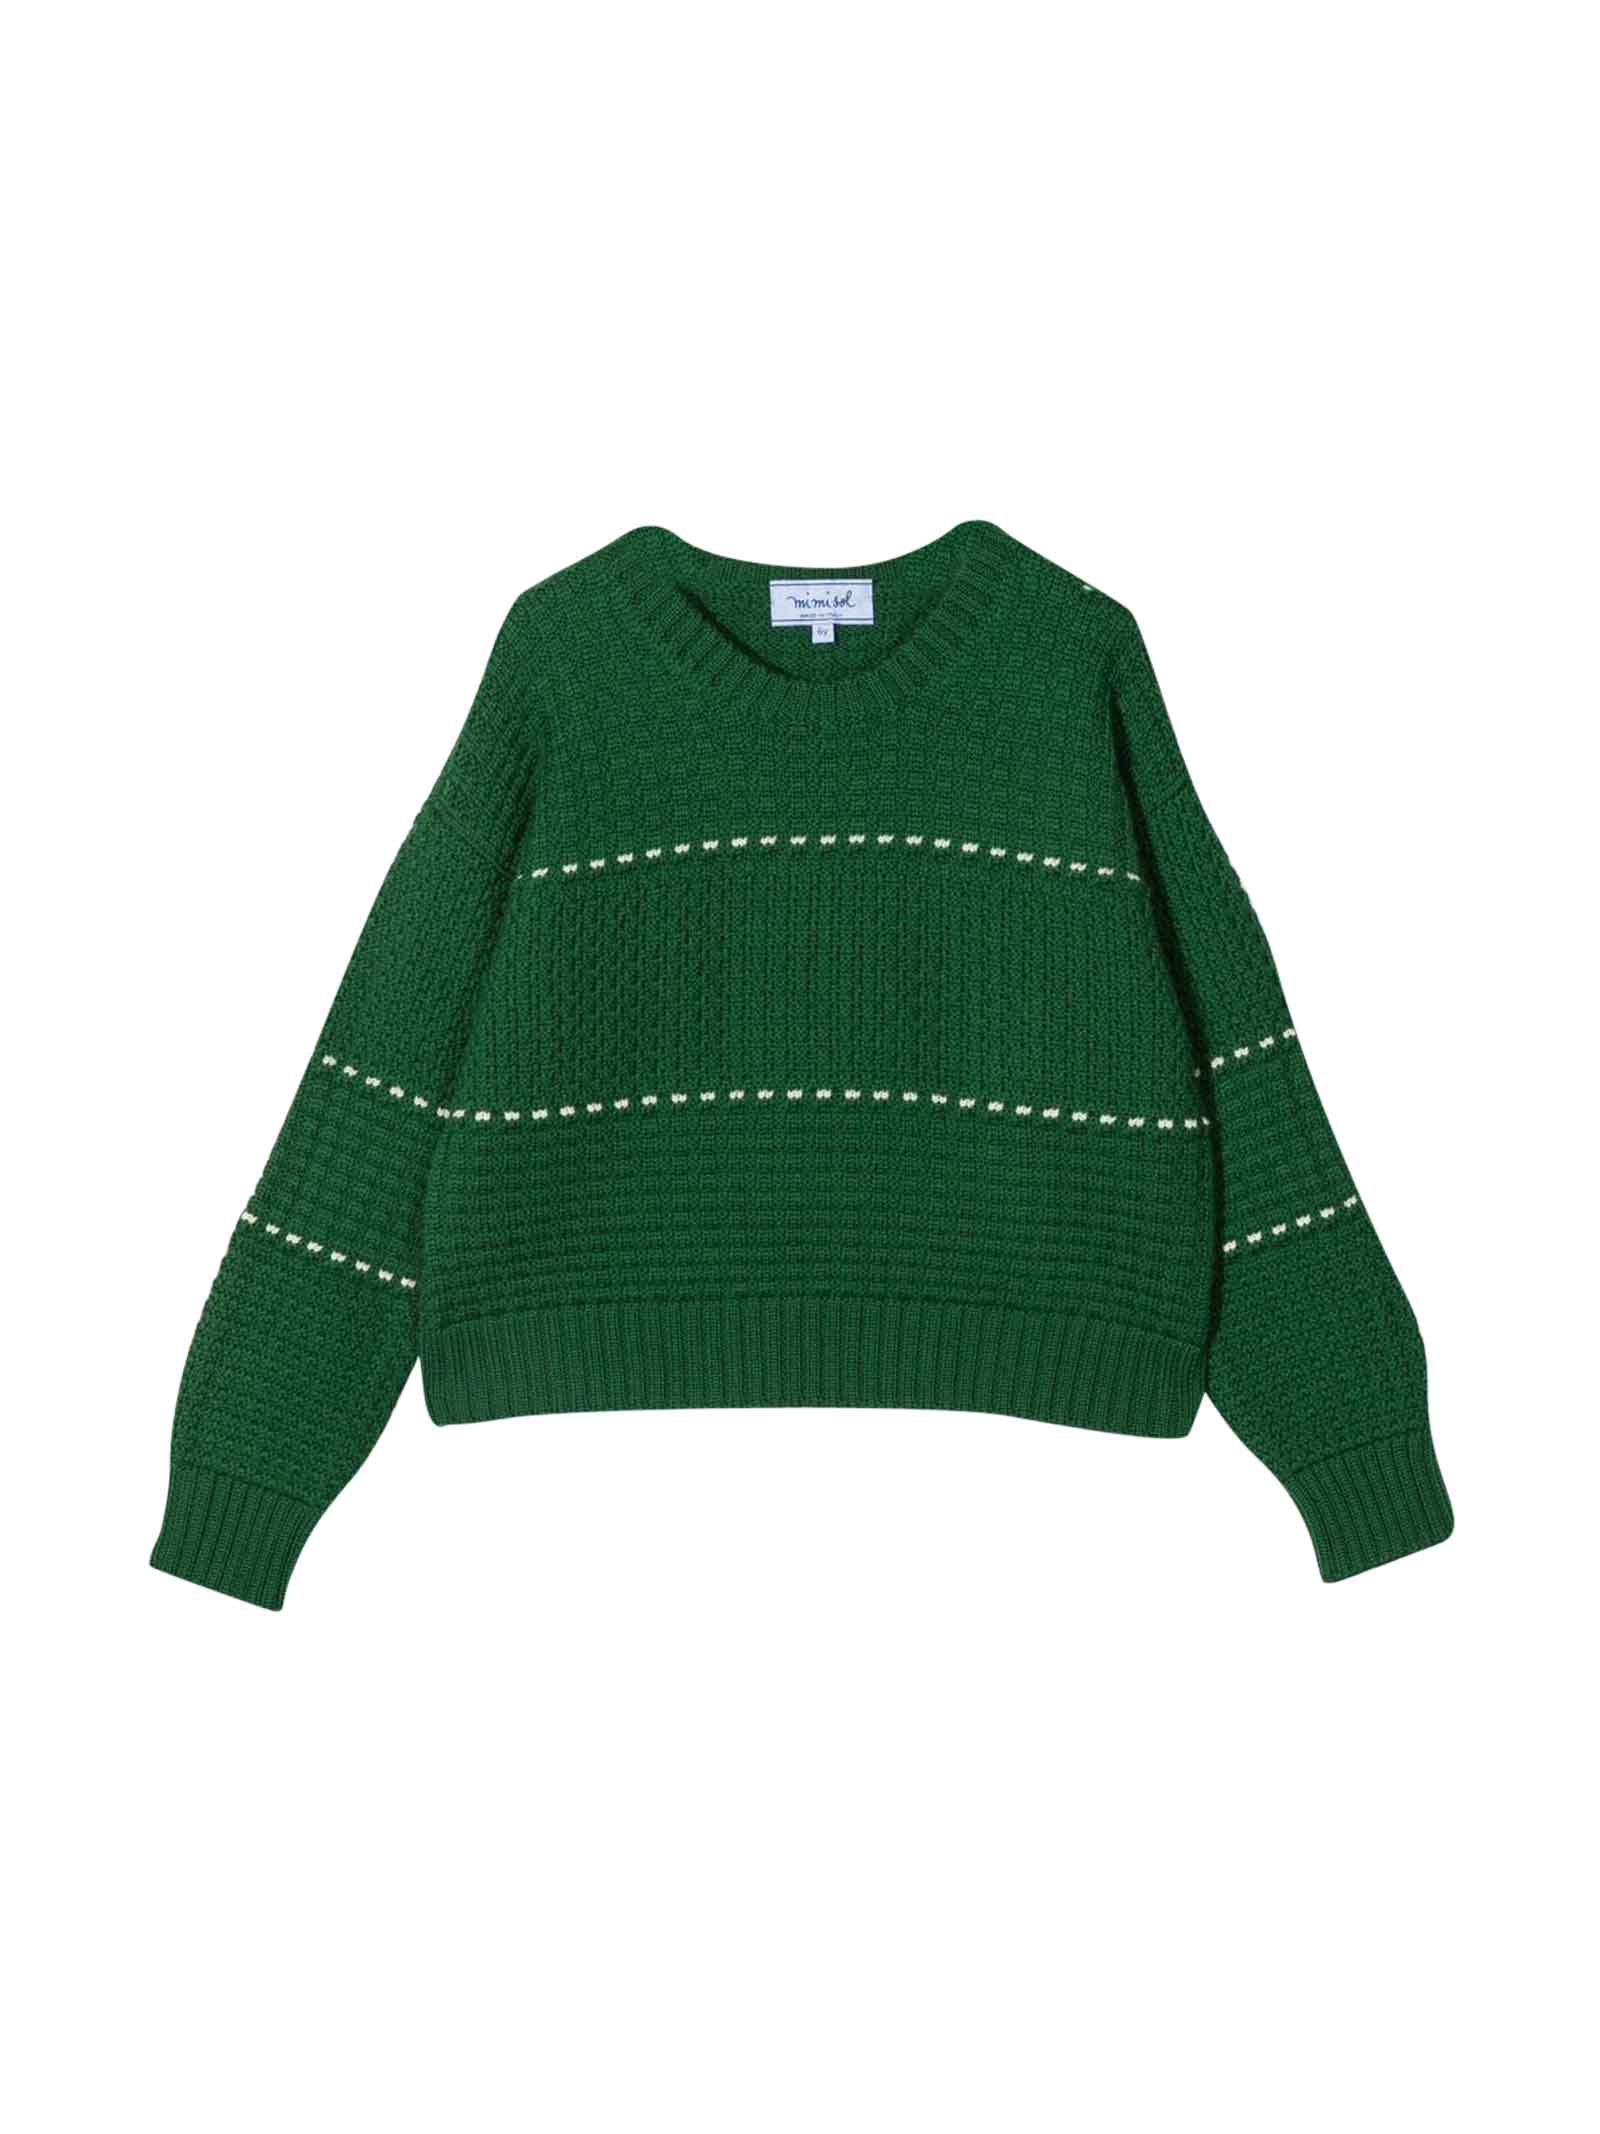 MiMiSol Mi Mi Sol Girls Green Sweater